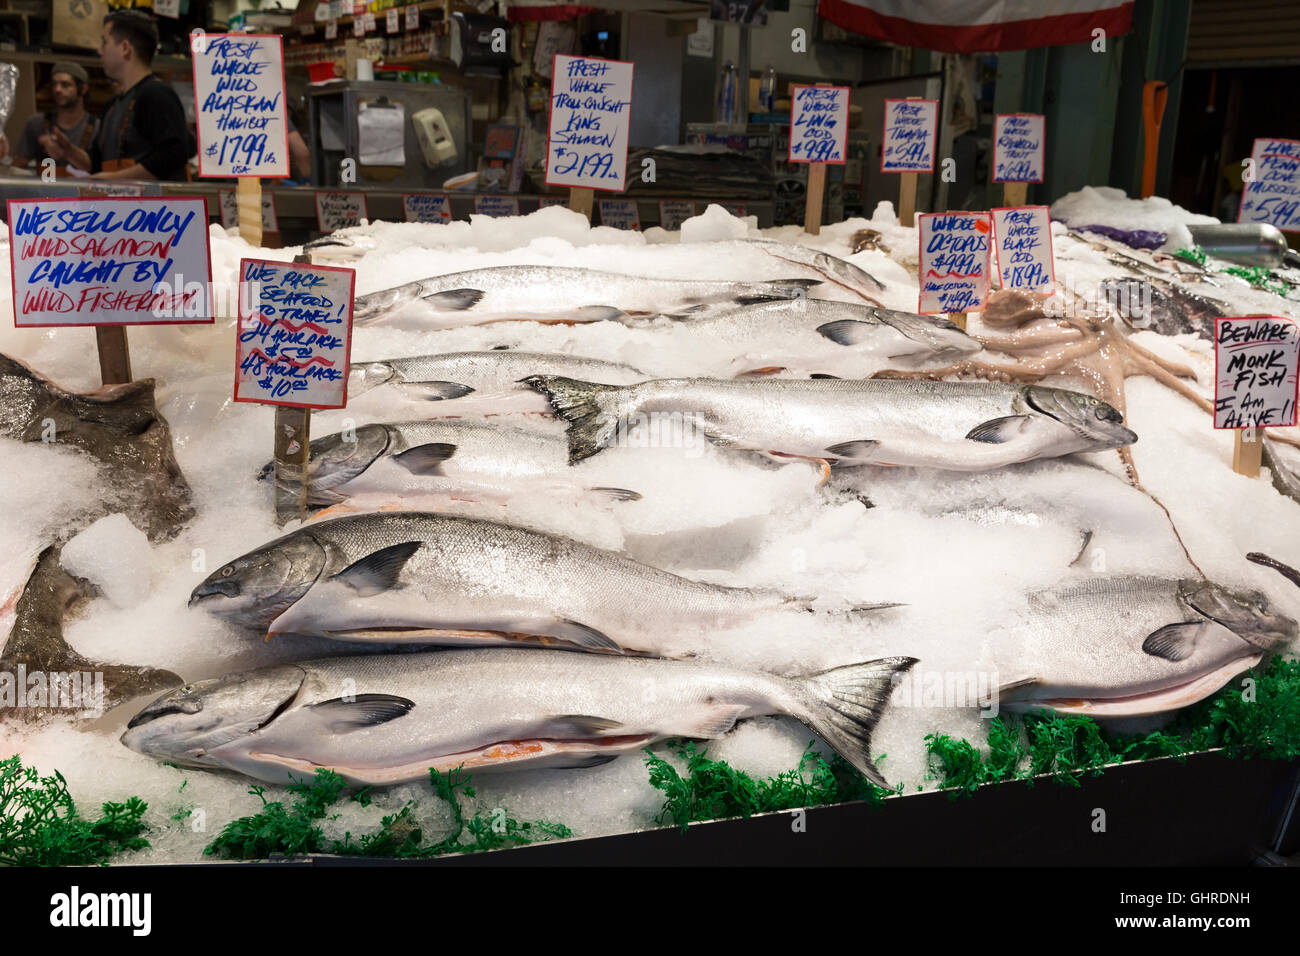 Seattle, Washington: Wildlachs zum Verkauf am Pike Place Fish Market. Stockfoto